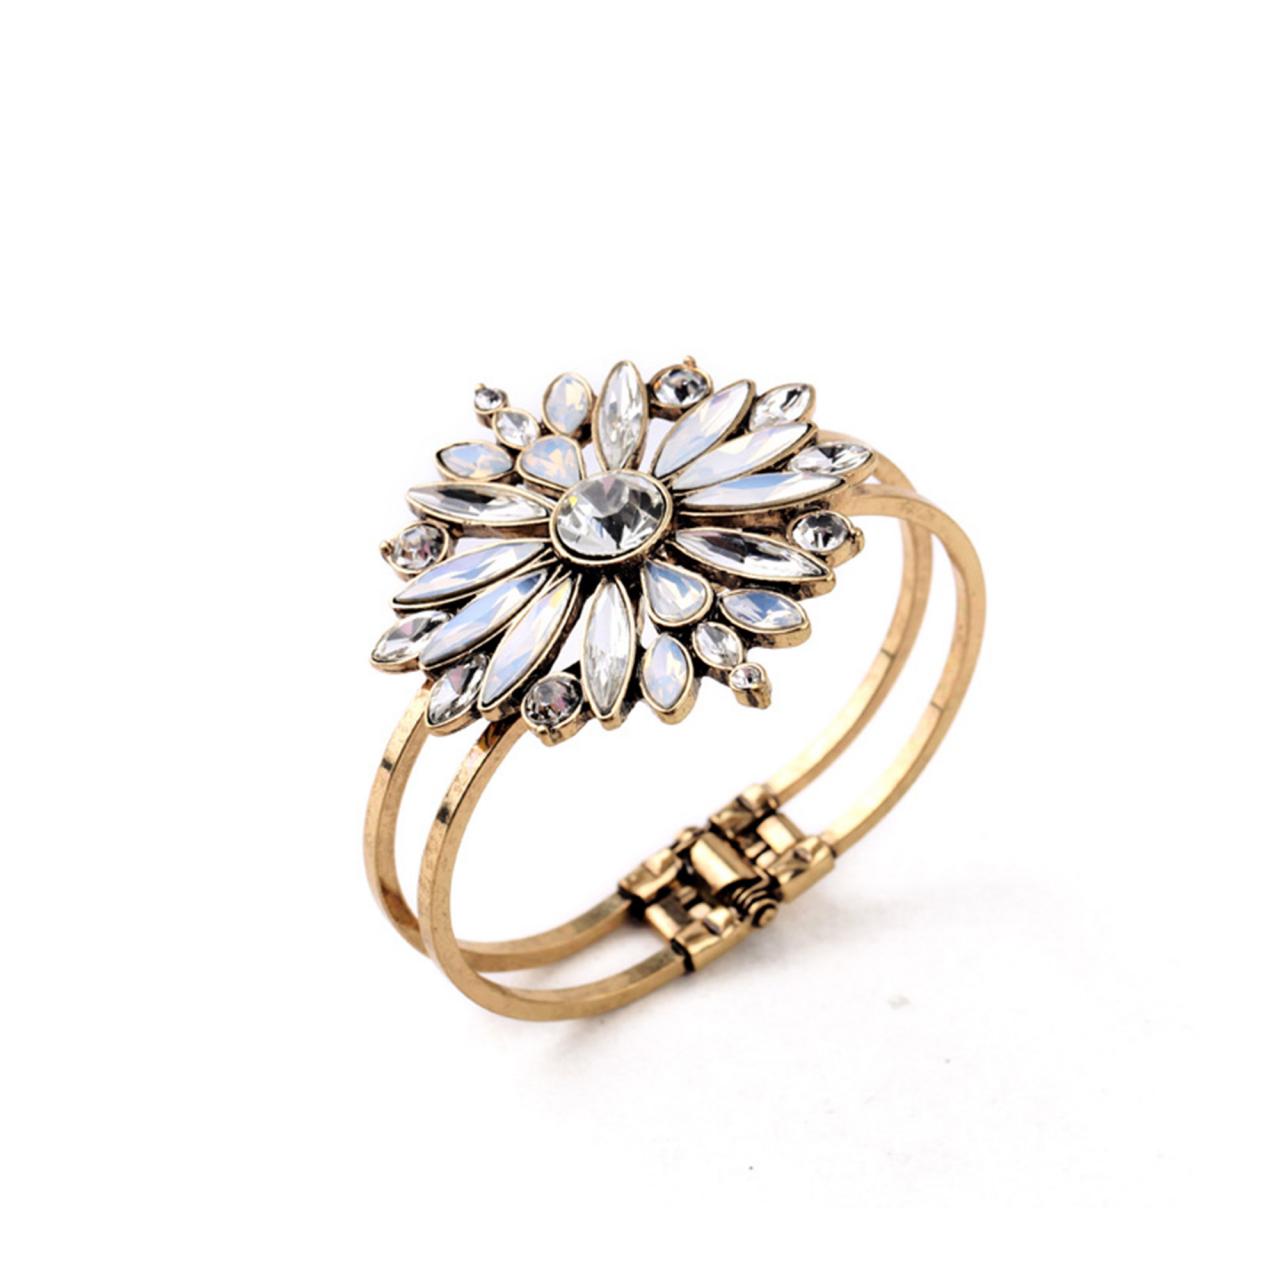 Crystal Bracelet / Opal Jewelry / Star Bracelet / Flower Jewelry / Gold Star Bracelet / Flower Cuff / Starburst Bracelet / Gold Bracelet